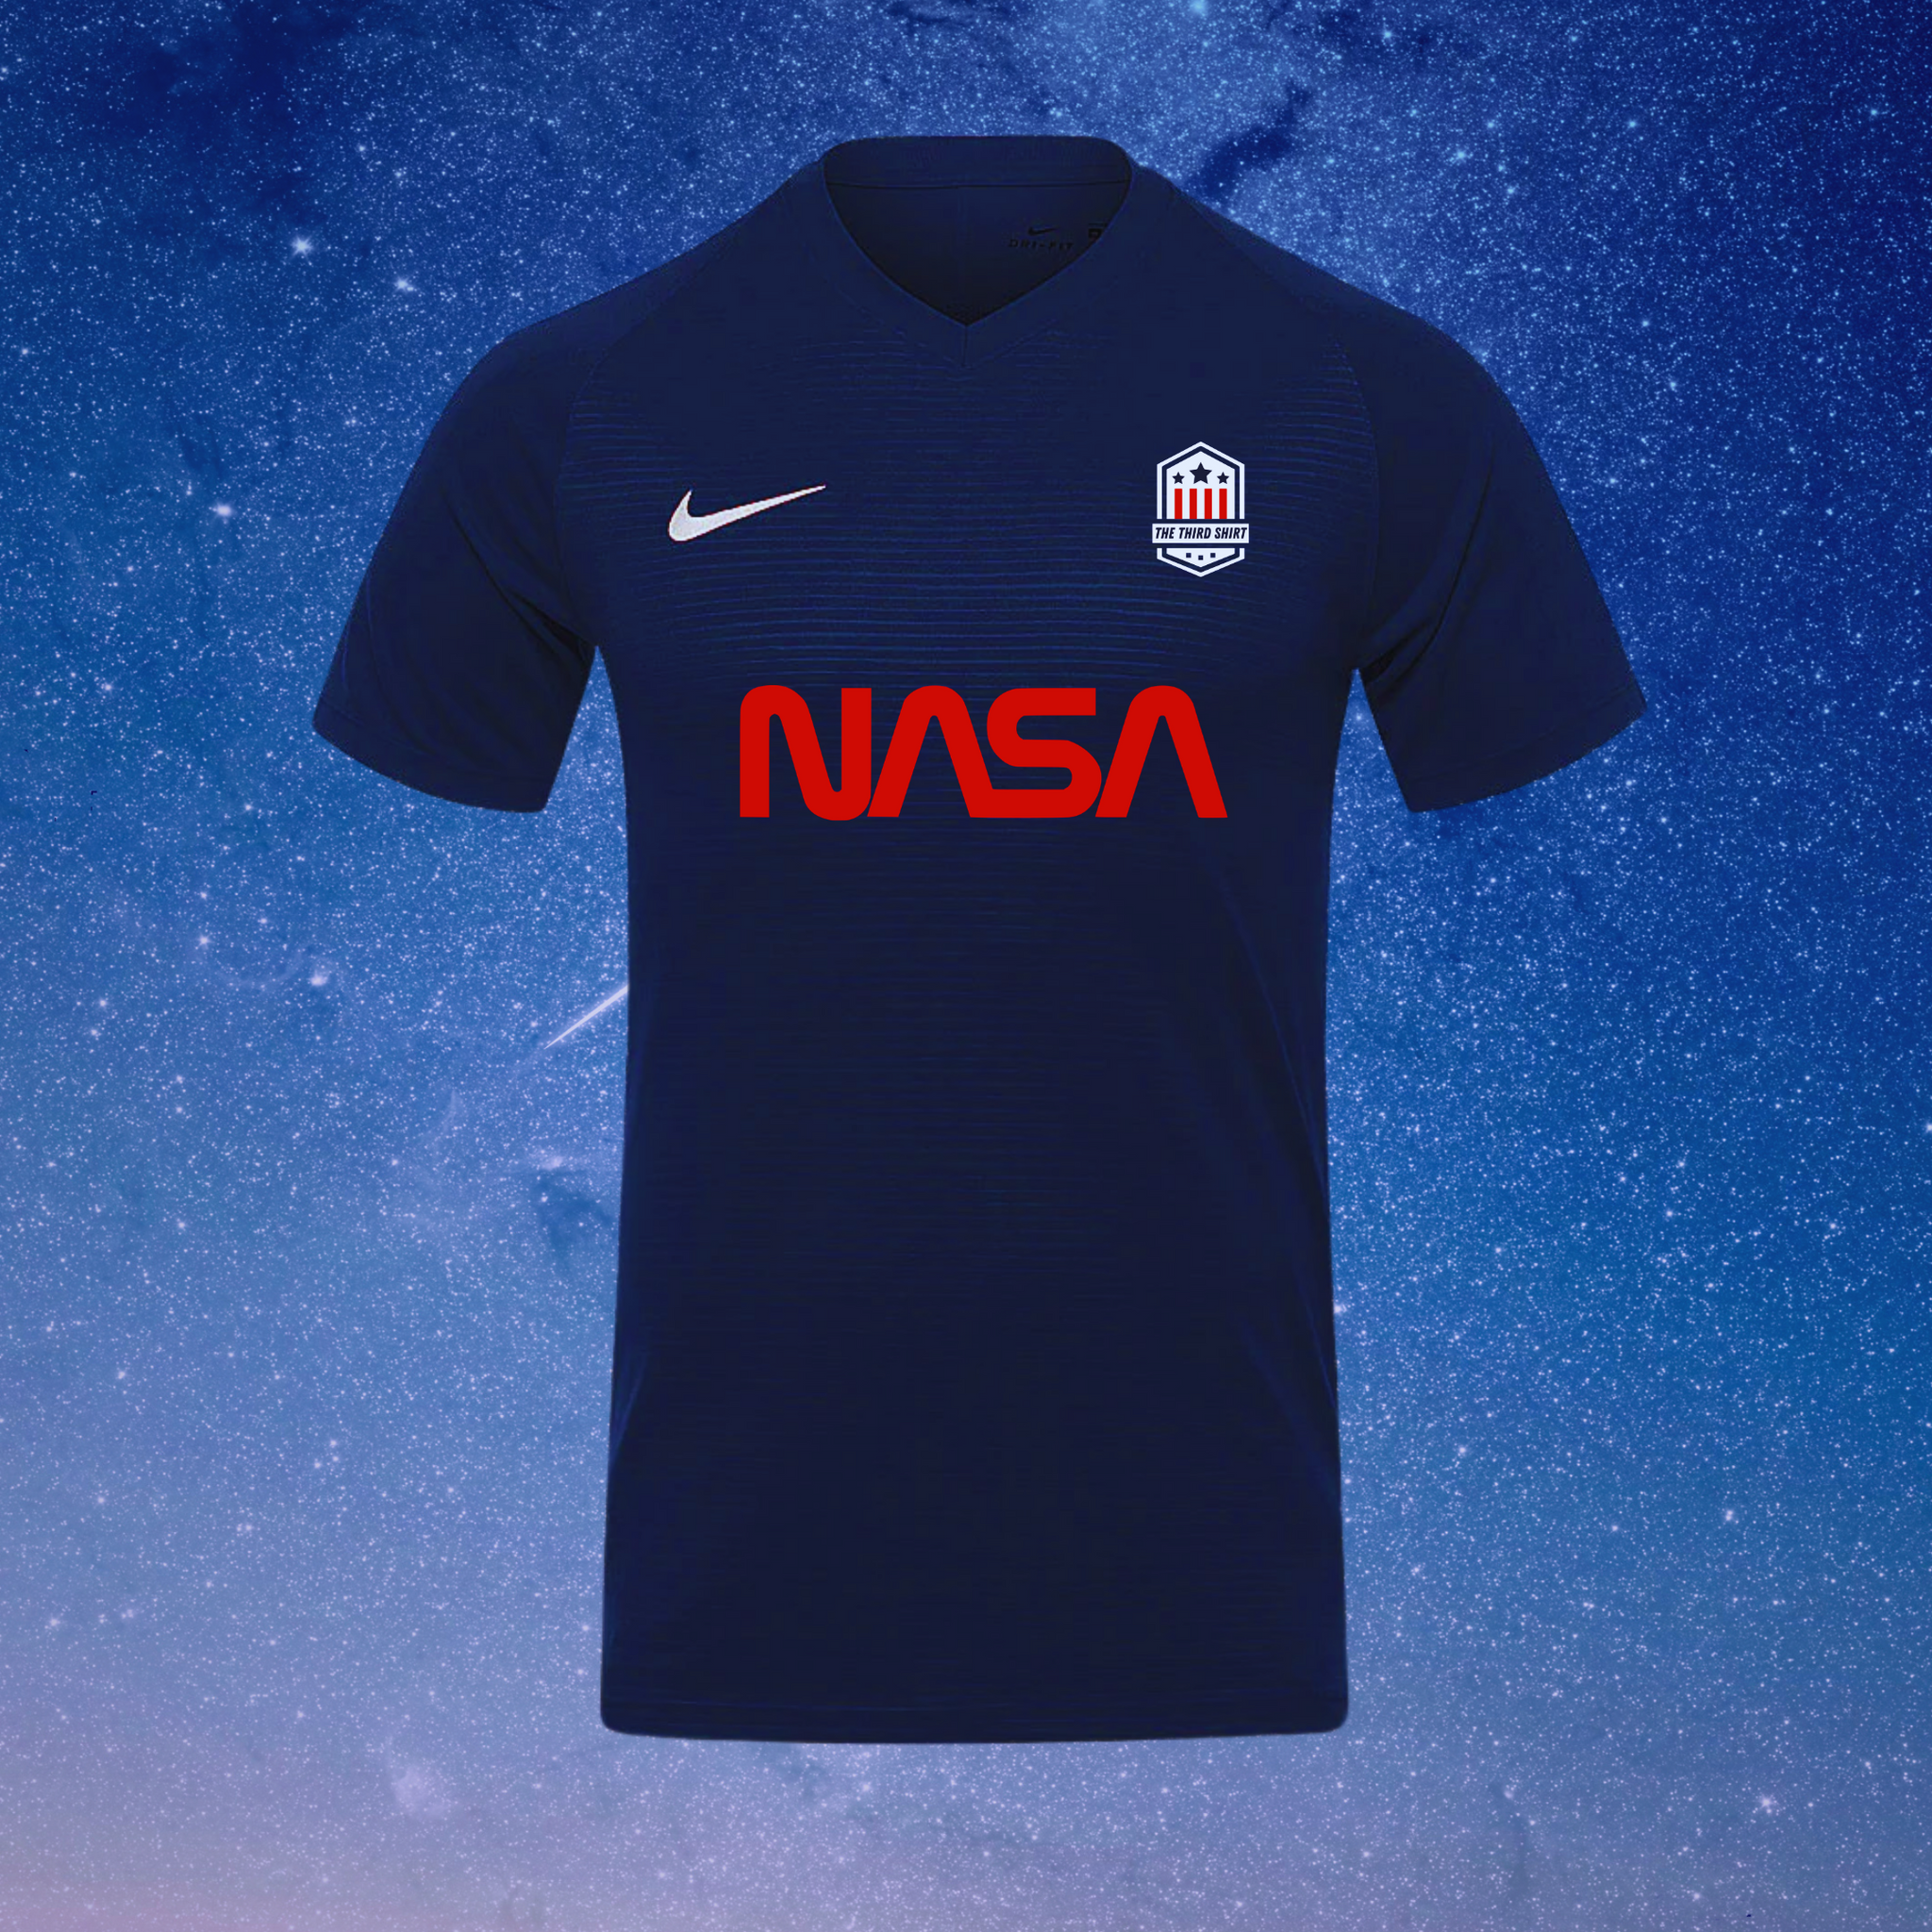 NASA - Nike Tiempo Premier Shirt